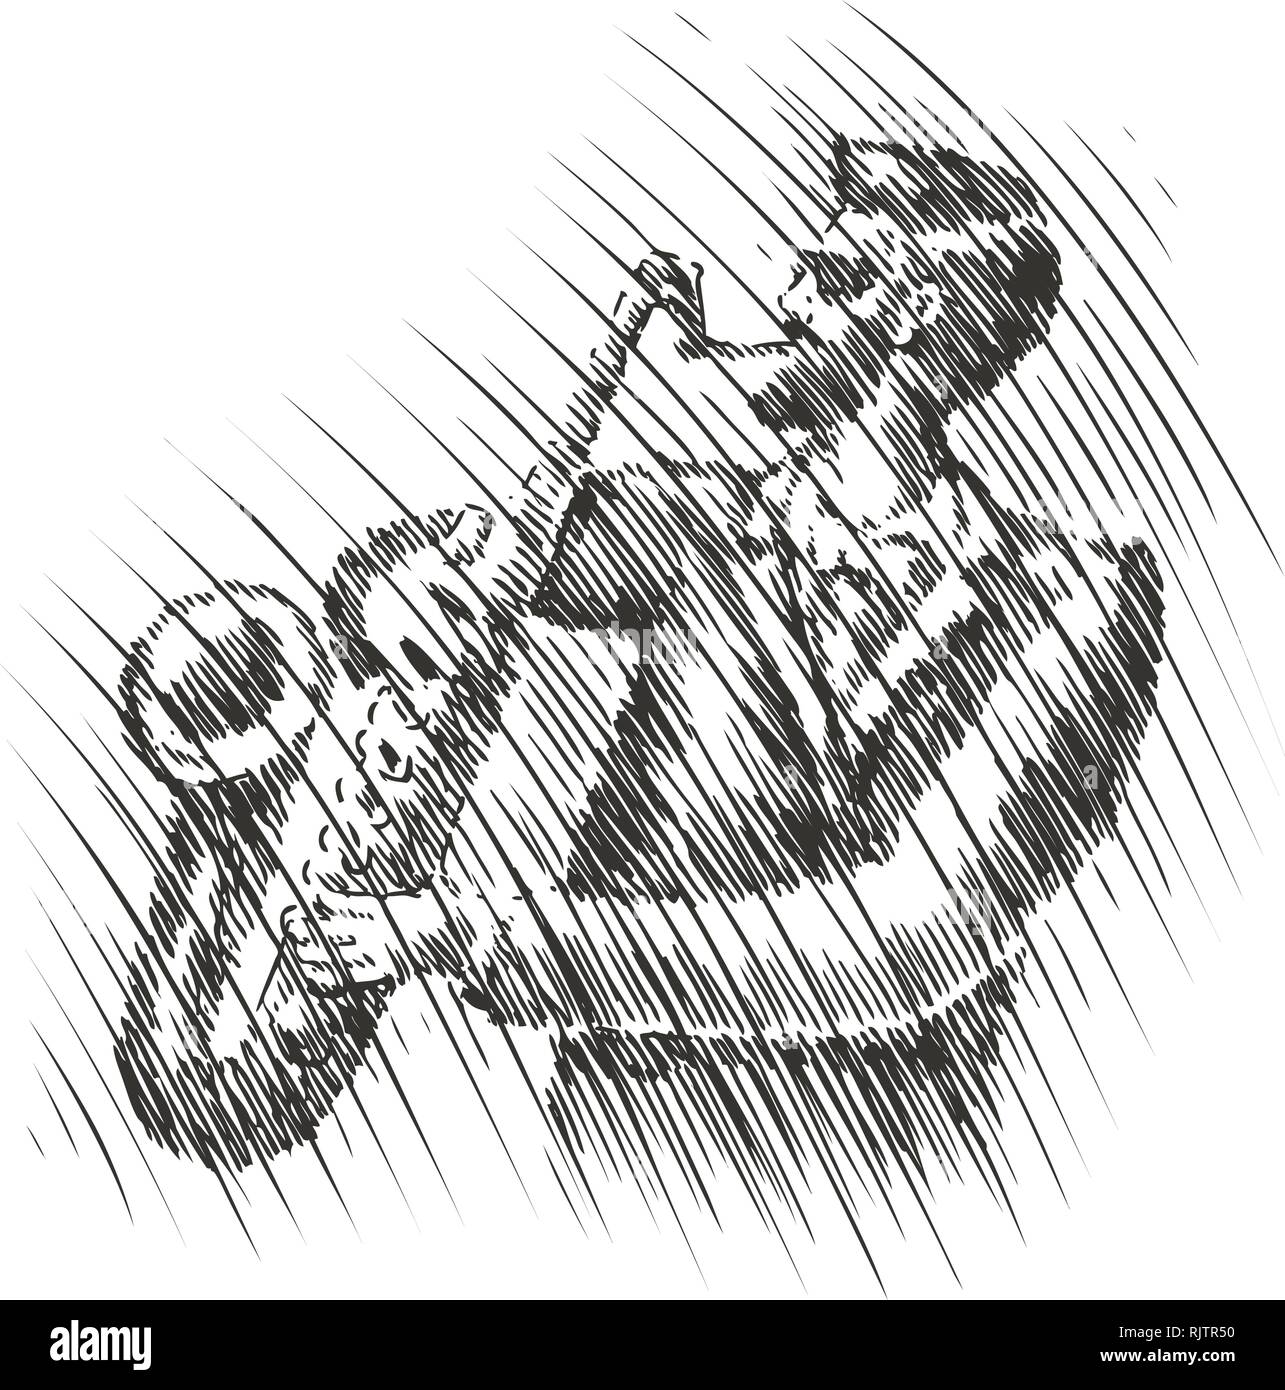 Musiker spielt das Saxophon. Live Musik, Musical Festival Skizze. Jazz, Blues, Vektor, Abbildung Stock Vektor